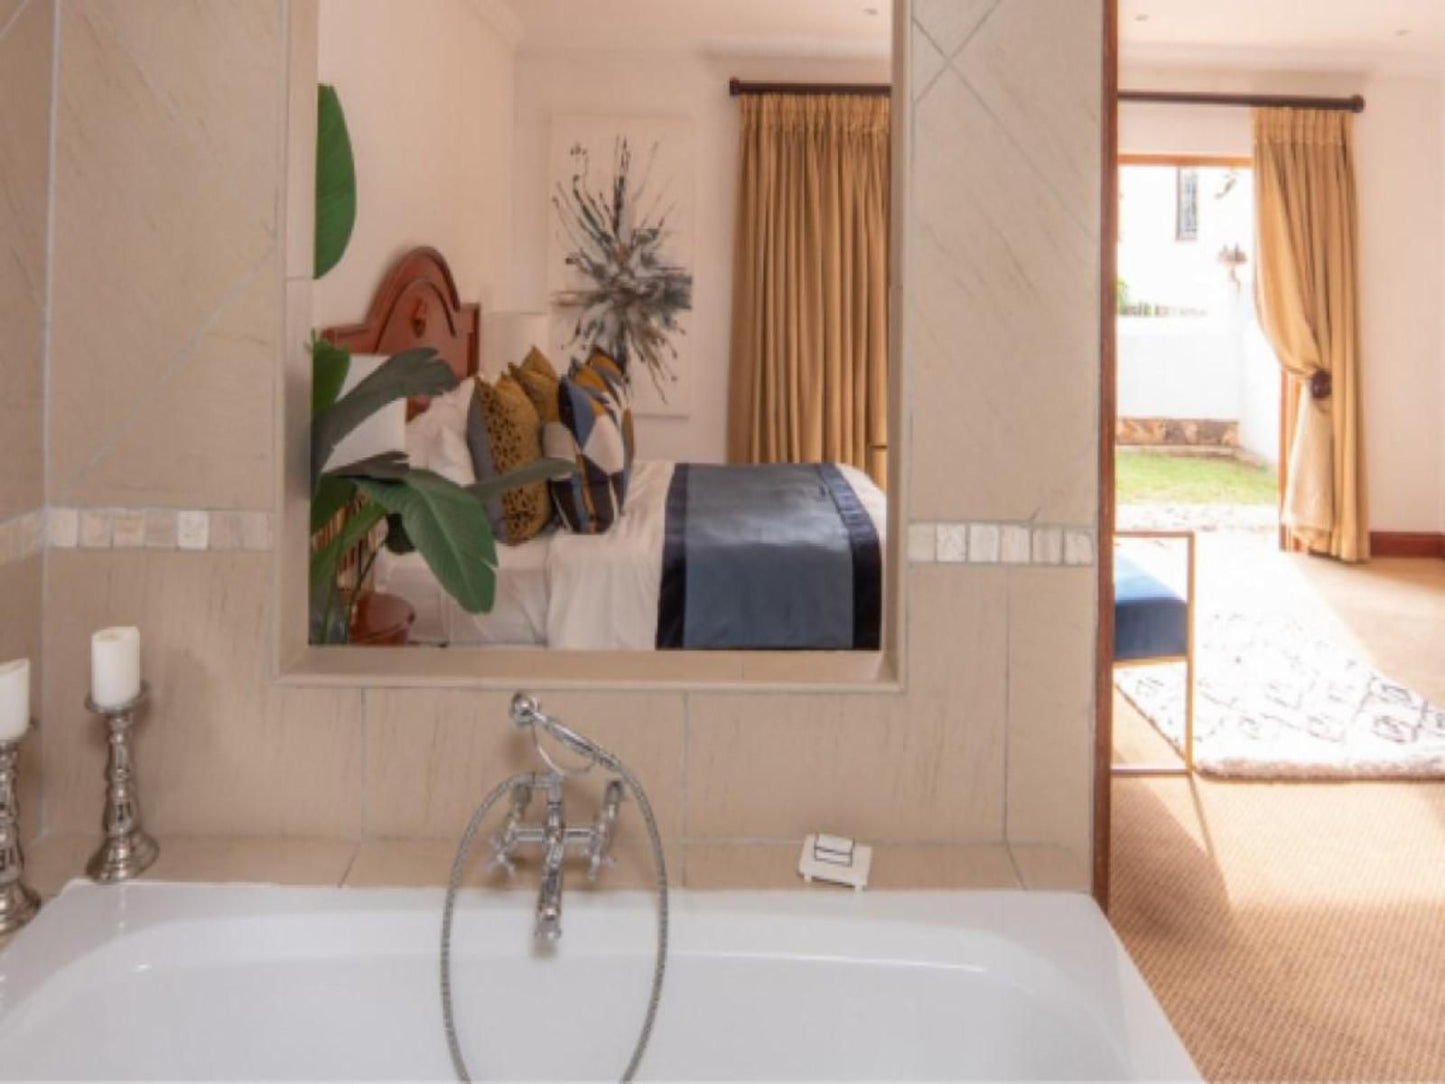 Jansen House Boutique Manor Irene Centurion Gauteng South Africa Bathroom